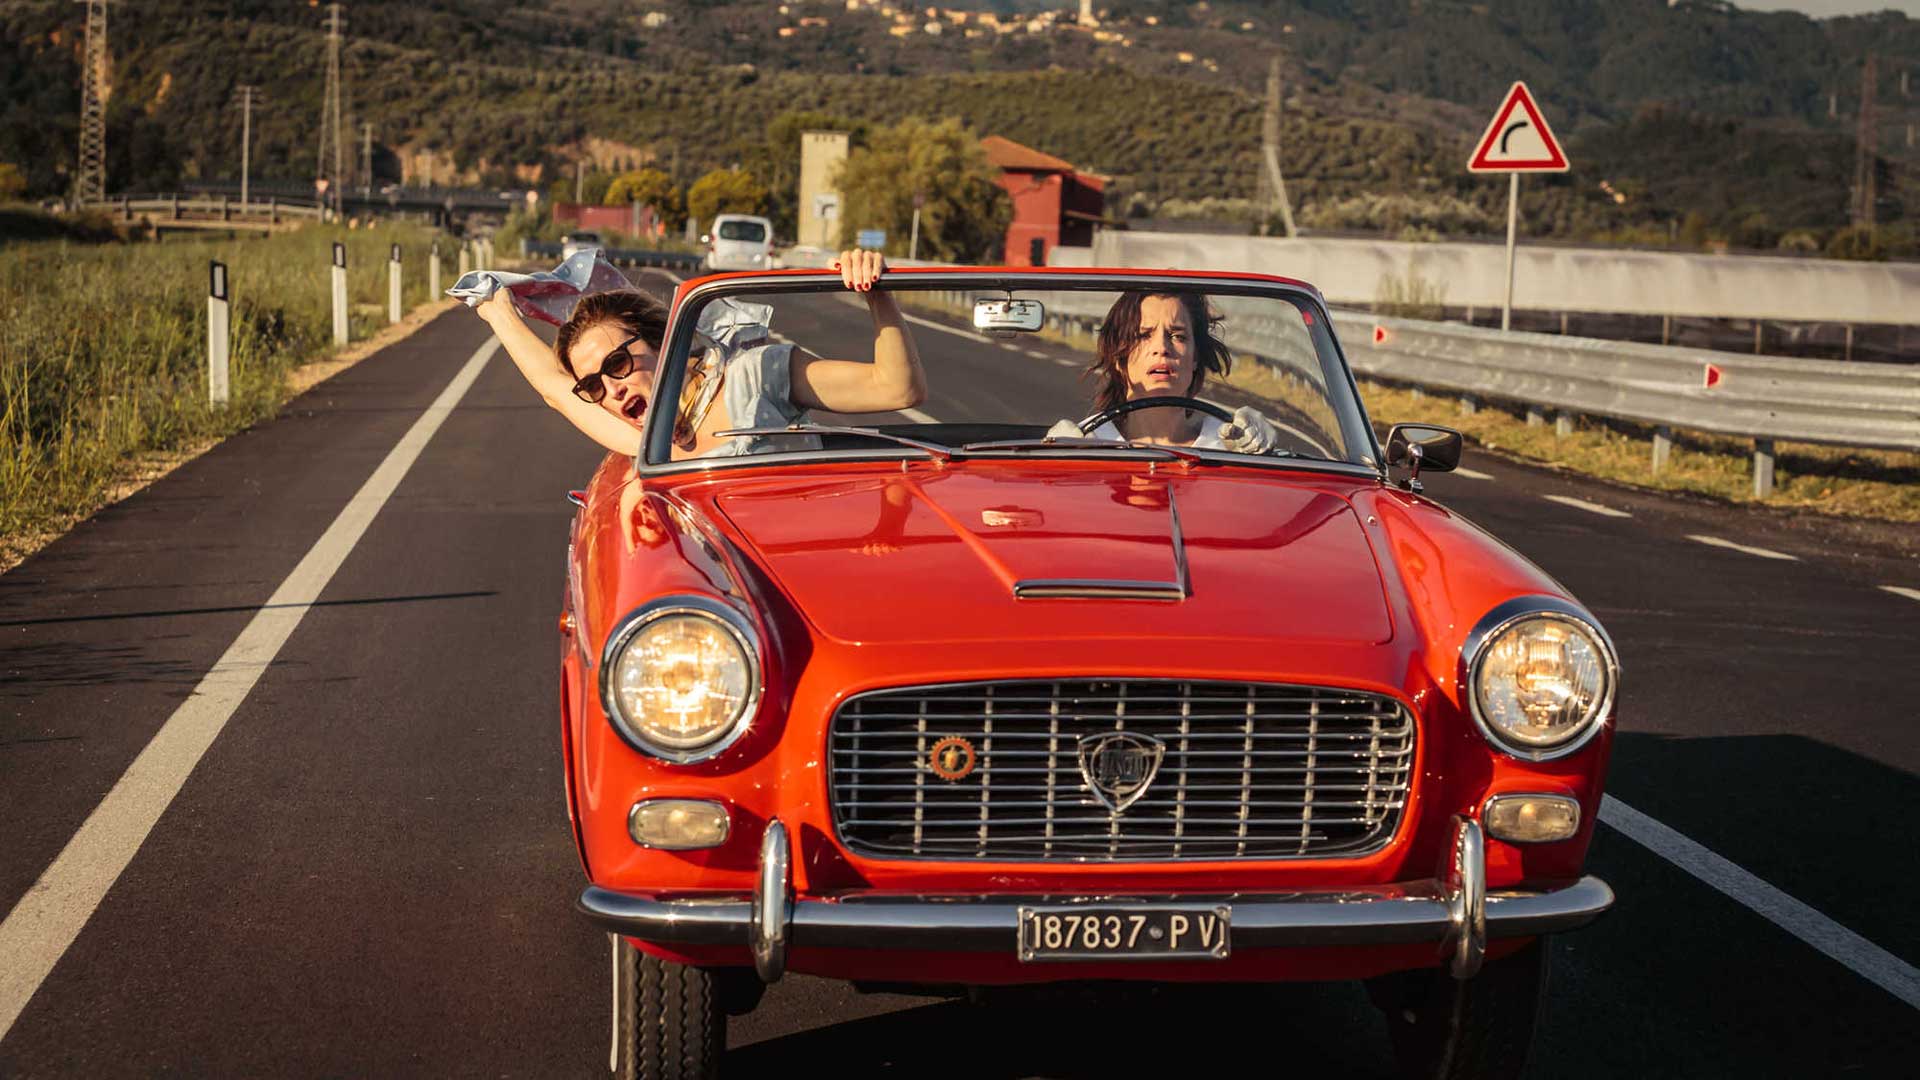 فیلم Like Crazy، محصول سال ۲۰۱۶ میلادی و دو نفر مشغول رانندگی در ماشین قرمزرنگ با ظاهر کلاسیک